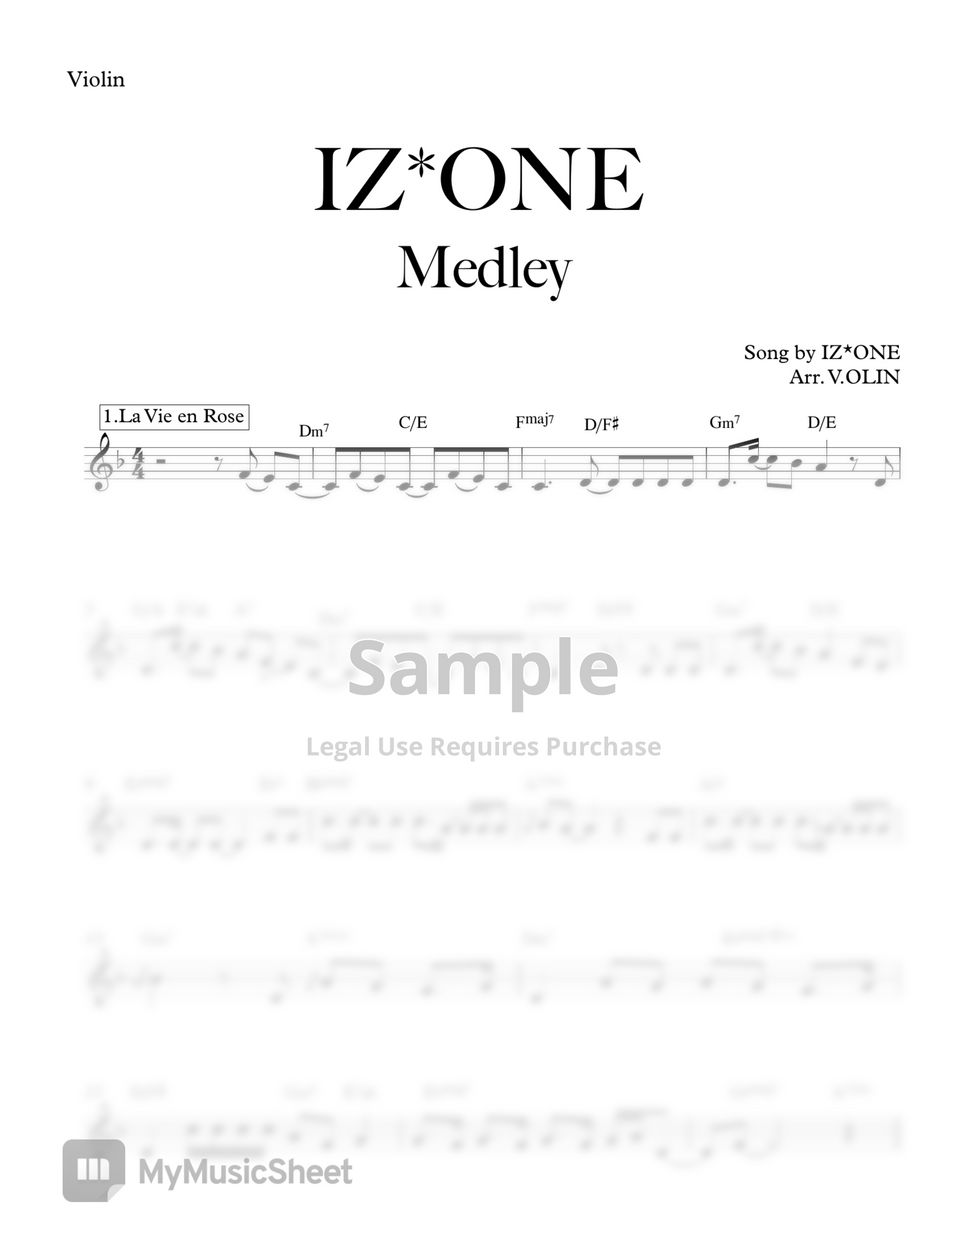 IZ*ONE - IZ*ONE Medley by V.OLIN